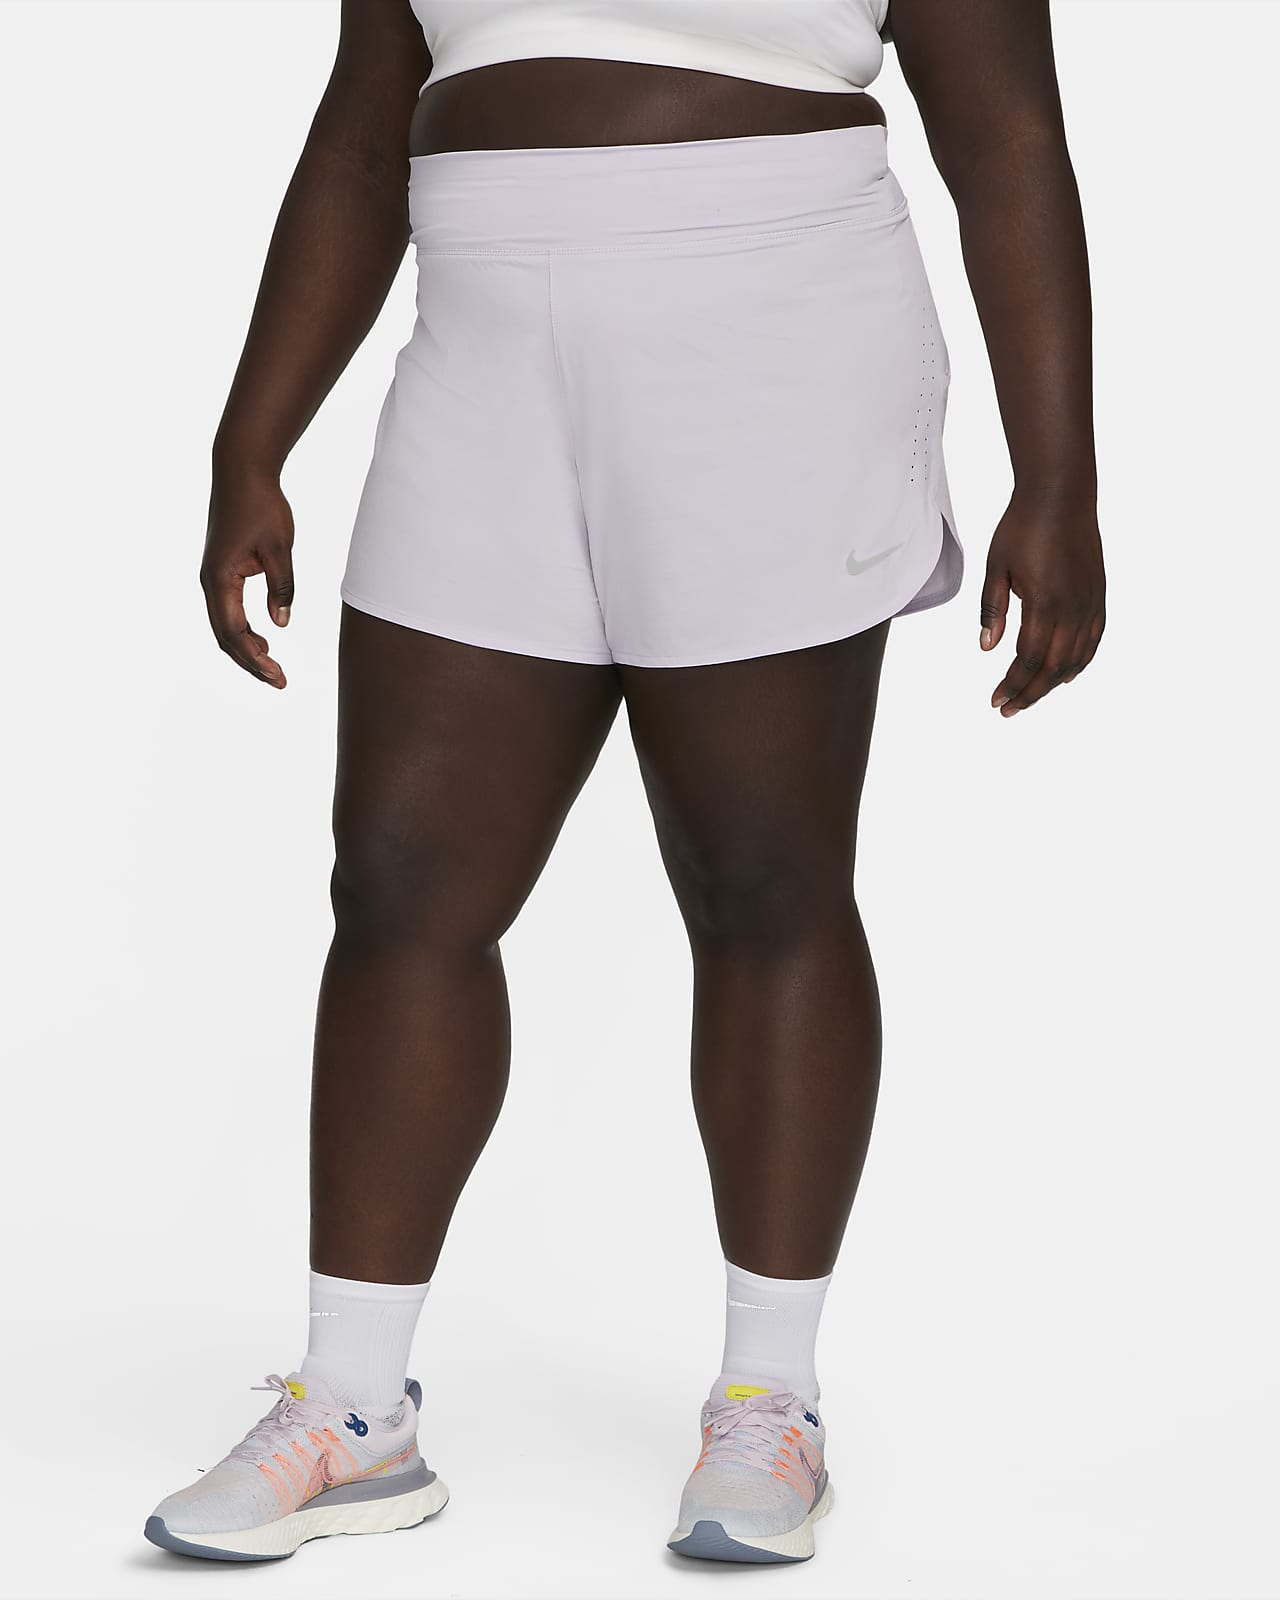 Nike Women's Running Shorts Size). Nike.com